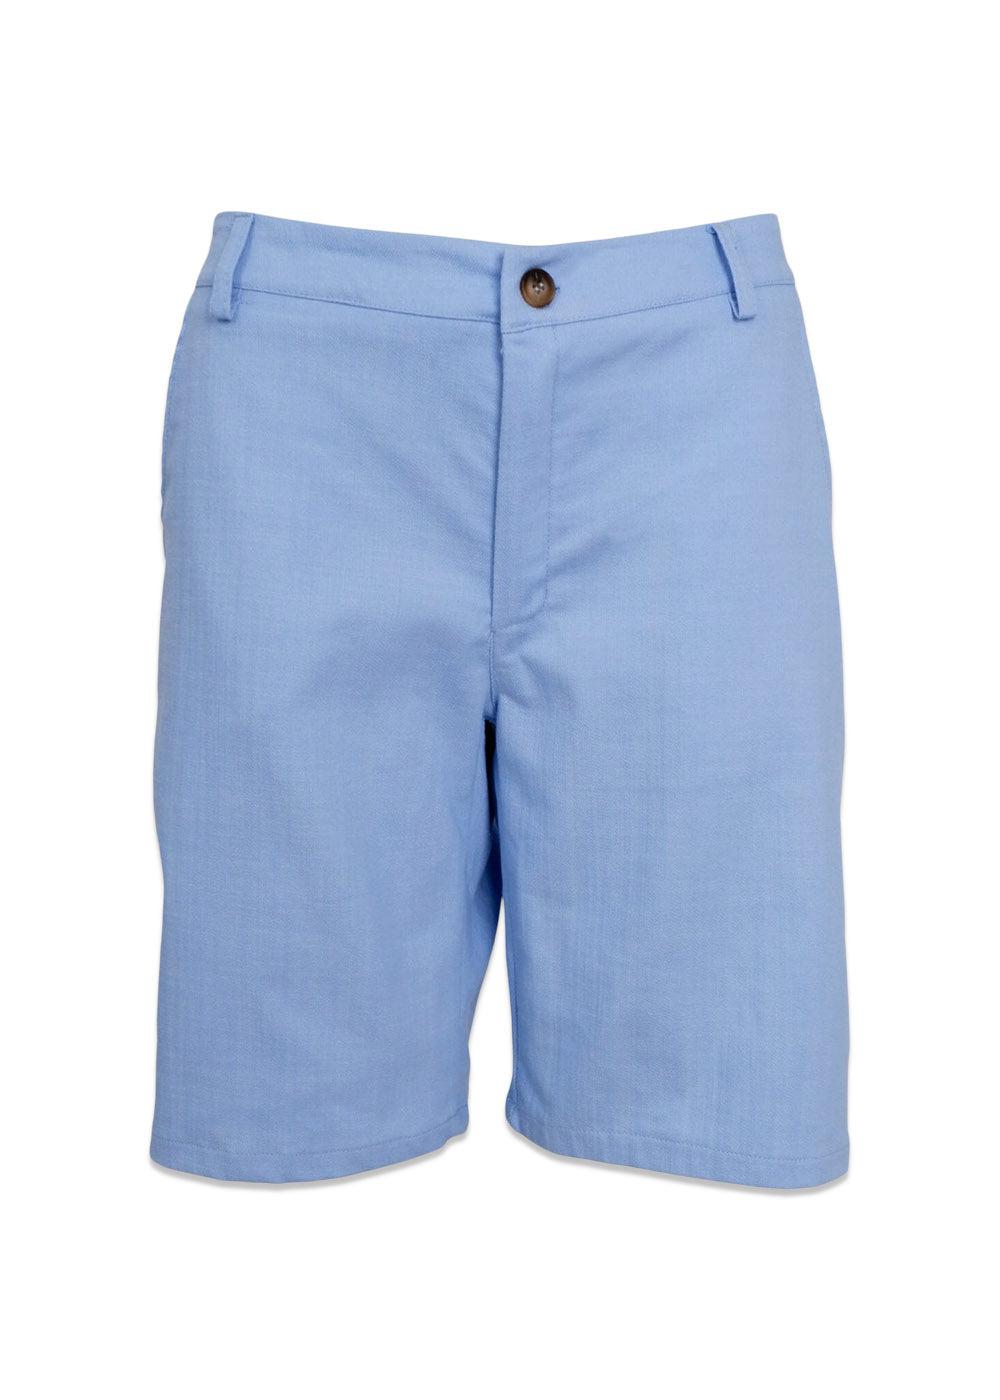 BCBOX shorts - Lt. Blue